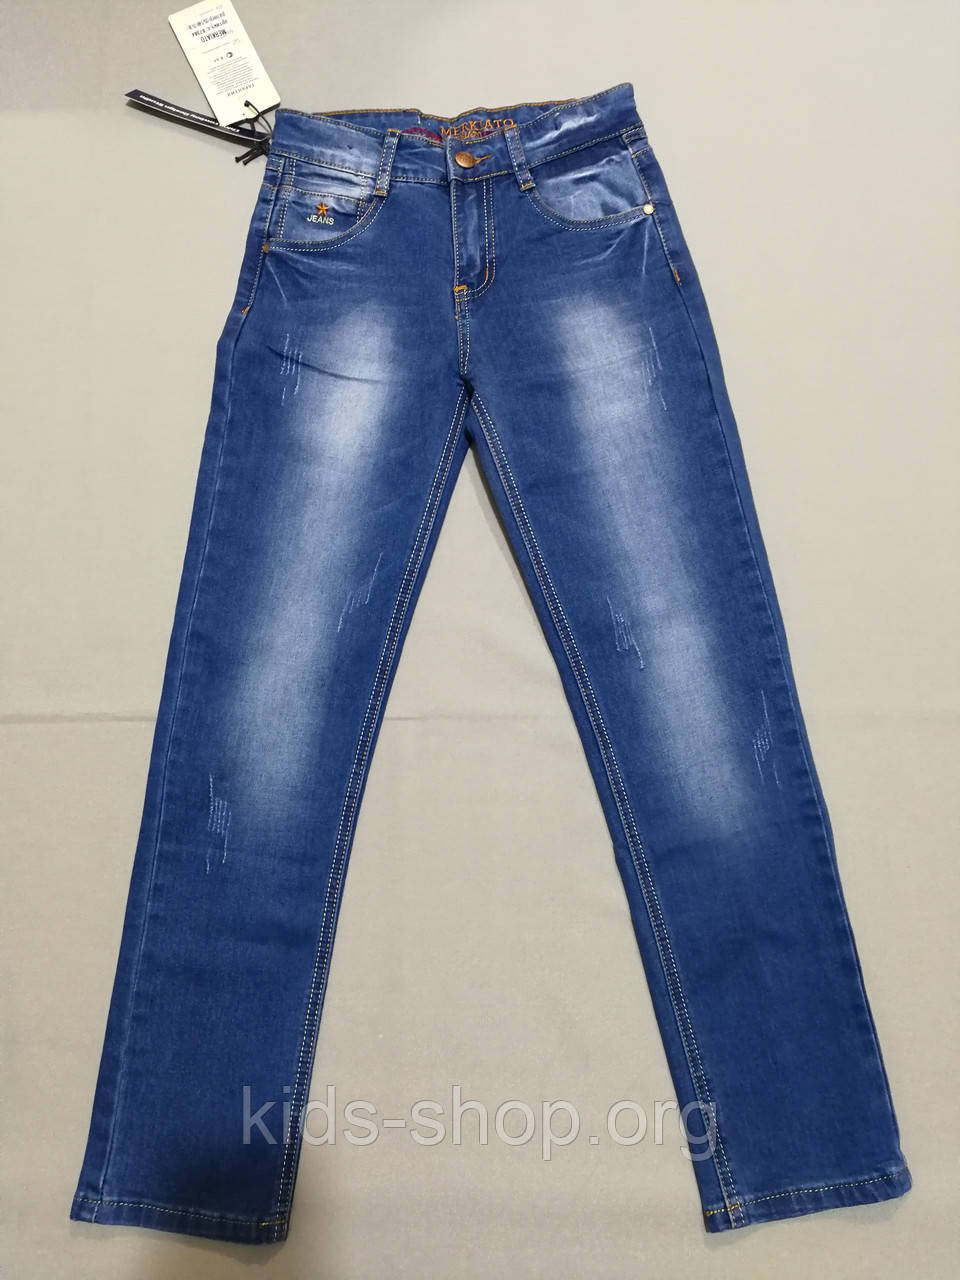 Підліткові джинси для хлопчика Ріст 140, 146, 152 см